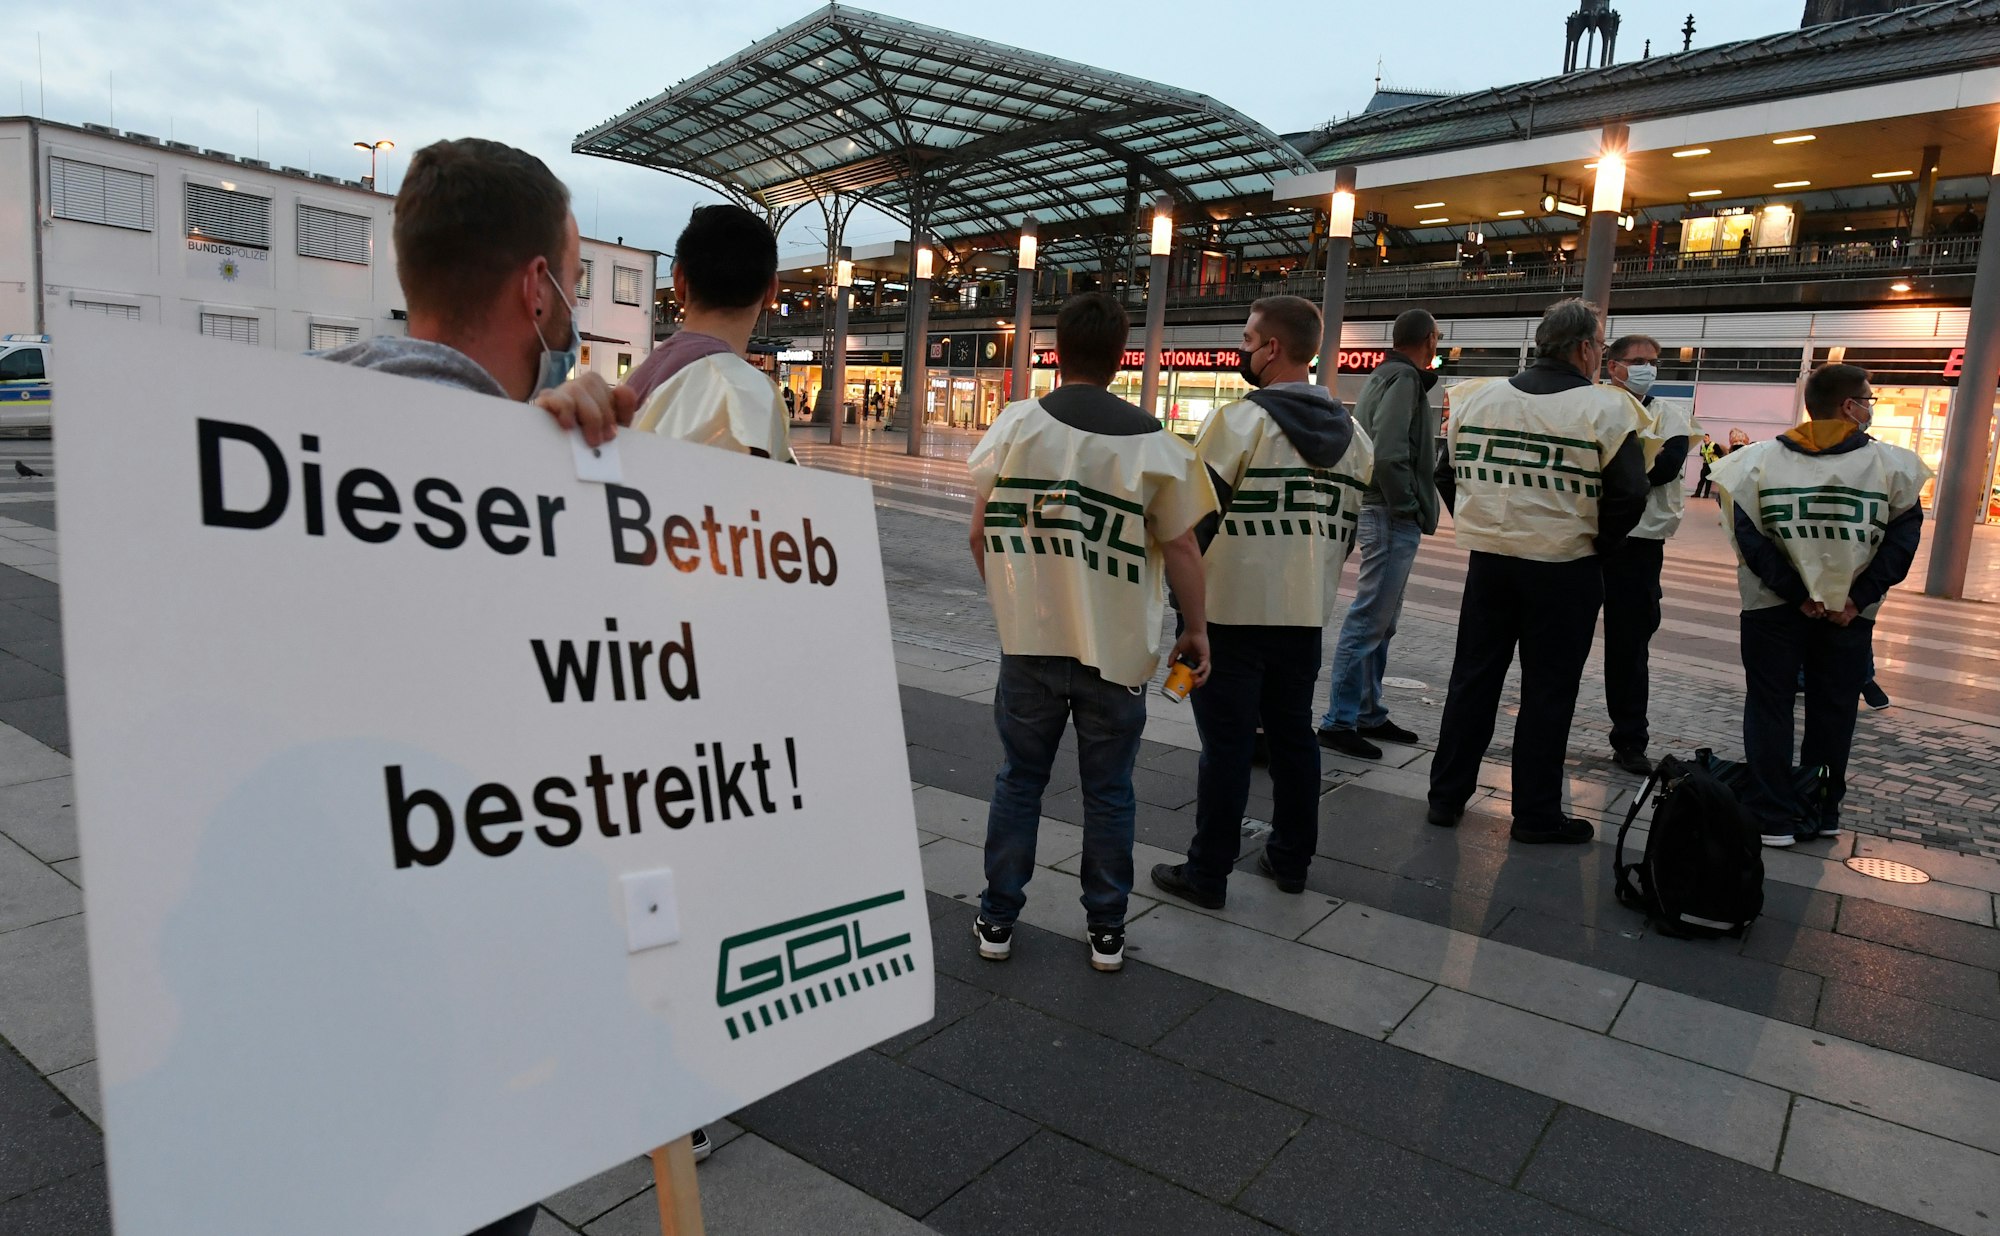 Mitglieder der Gewerkschaft der Lokführer (GDL) stehen mit einem Schild mit der Aufschrift „Dieser Betrieb wird bestreikt!“ auf dem Bahnhofsvorplatz.